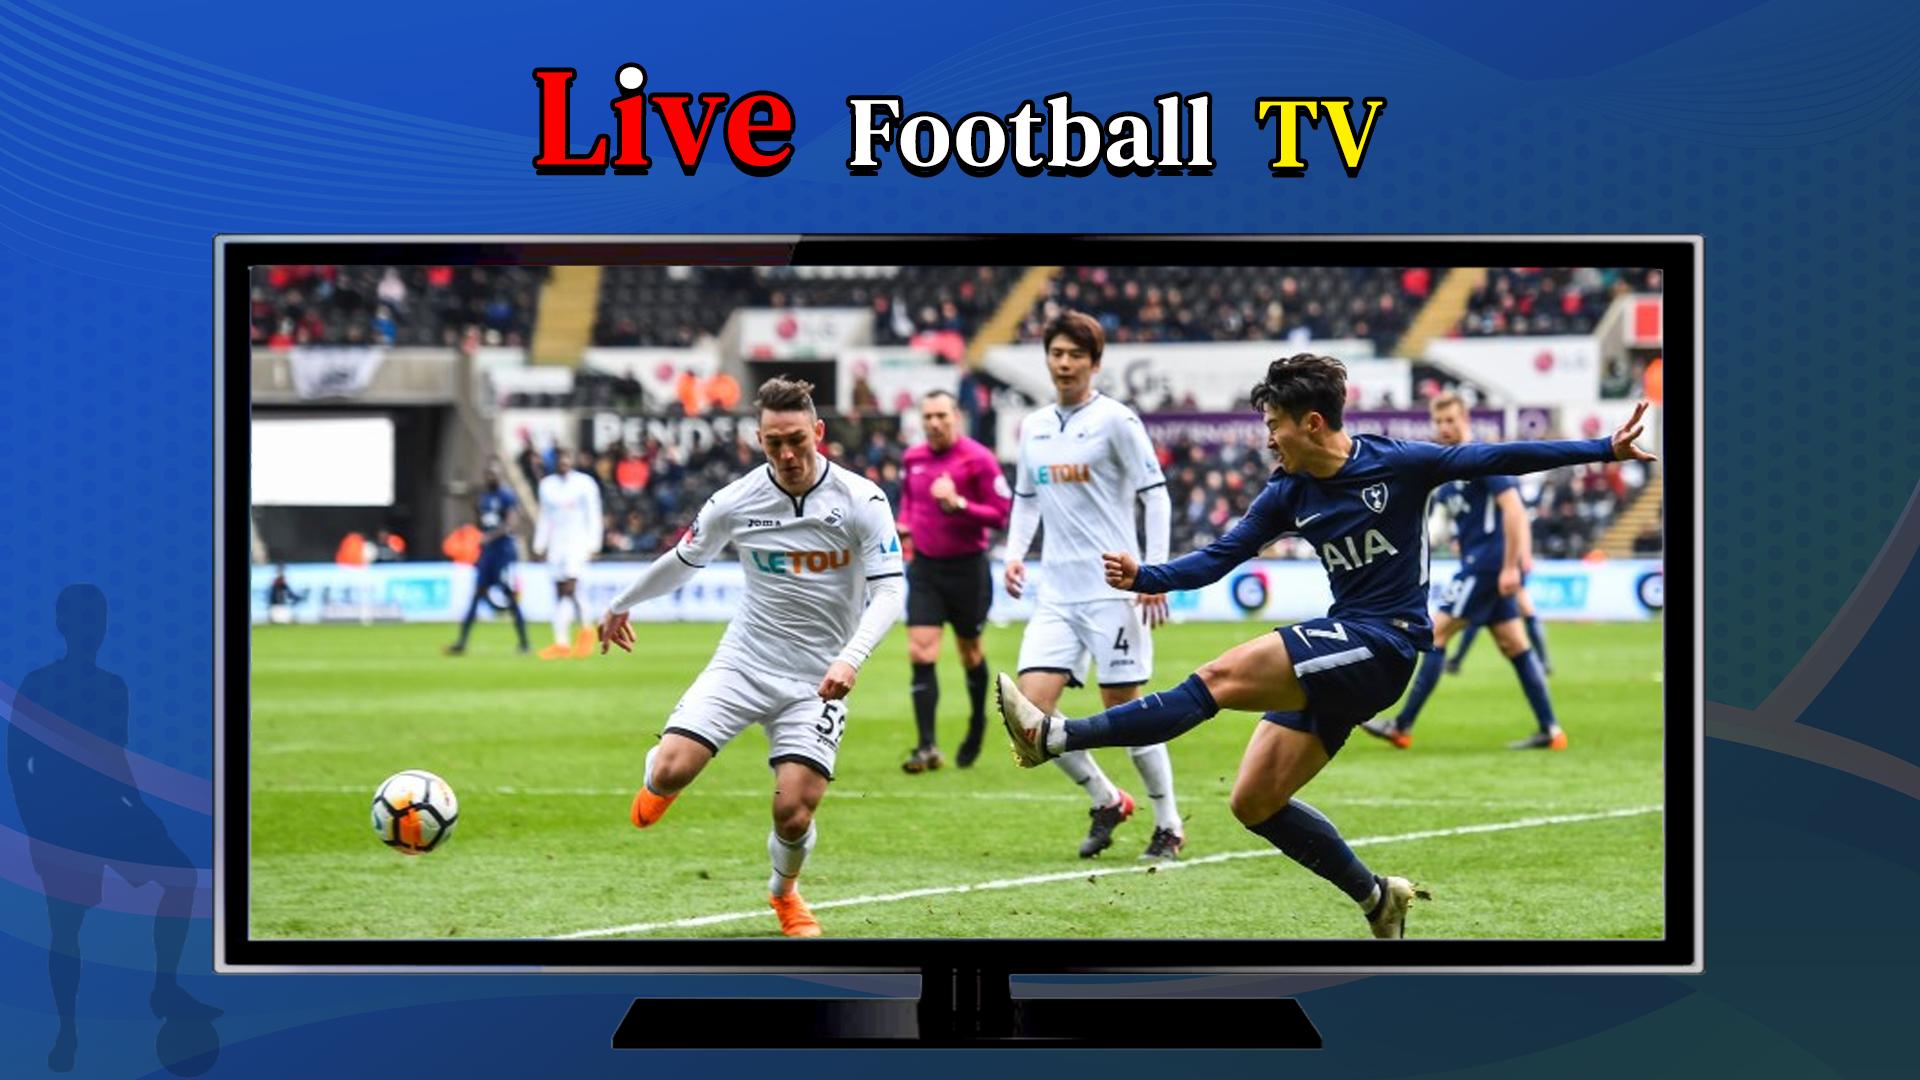 Không còn phải lo lắng về việc bỏ lỡ trận đấu yêu thích nữa, Live Football TV HD Streaming sẽ cung cấp cho bạn những trận đấu đang diễn ra trên toàn thế giới với độ phân giải cao nhất. Cứ ngồi yên và thưởng thức thôi nào!